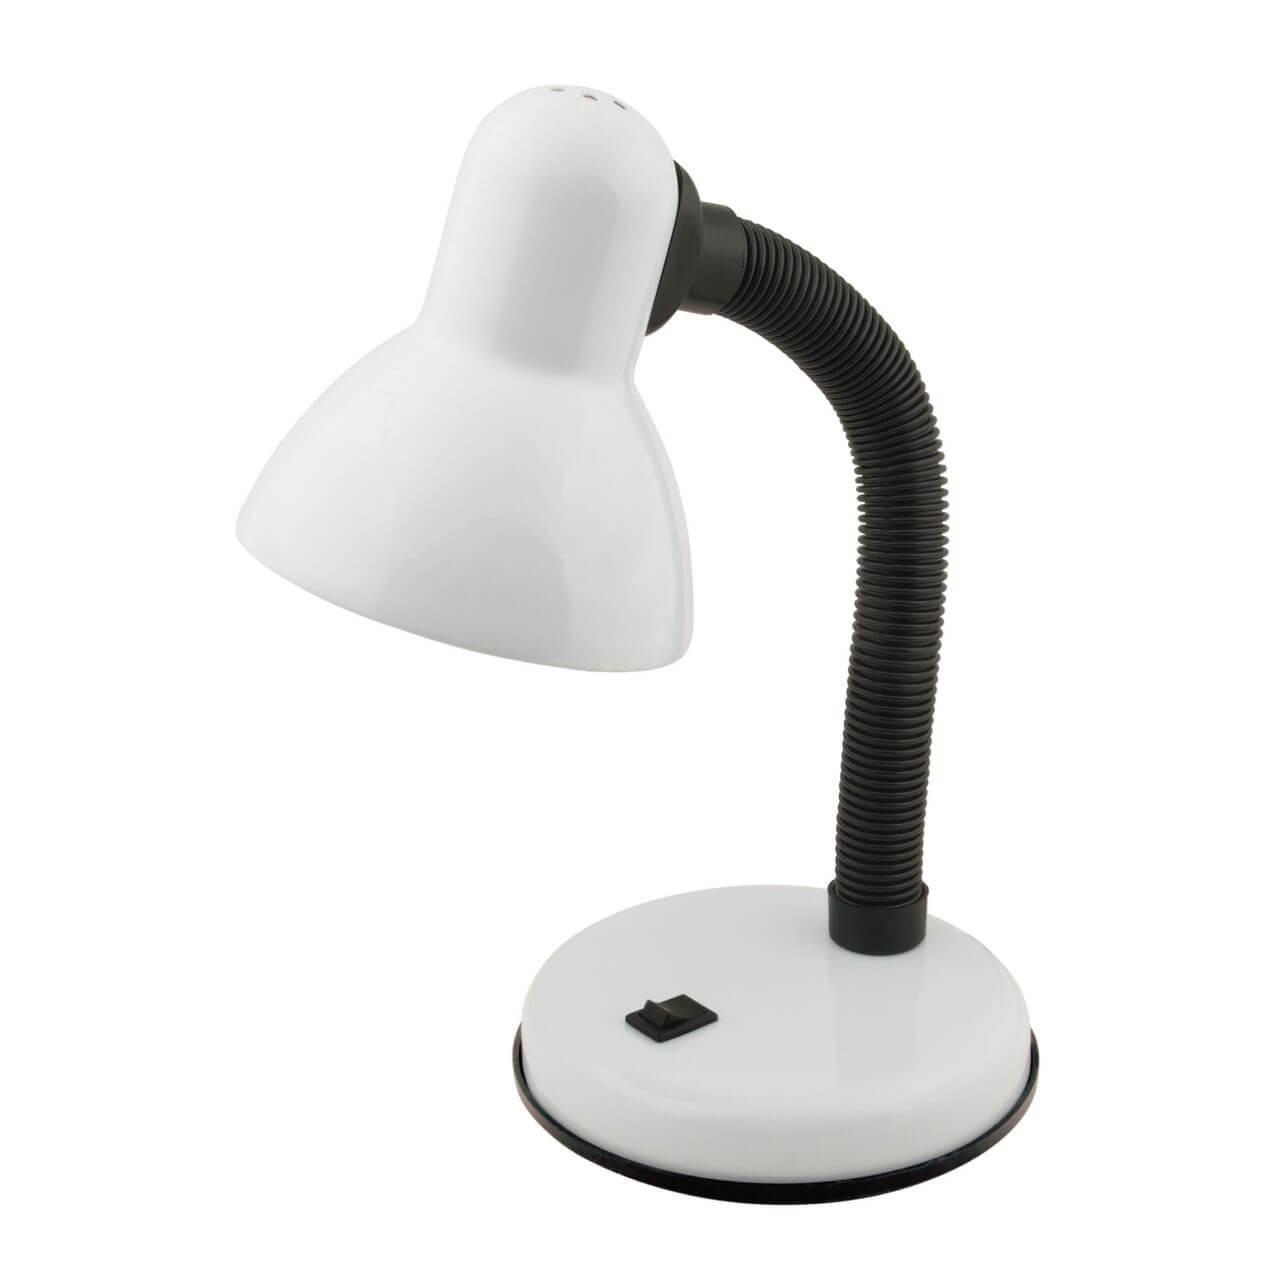 Настольная лампа Uniel TLI-204 White E27 02167 настольная лампа ginan 64 см d 36 см 1x40вт e27